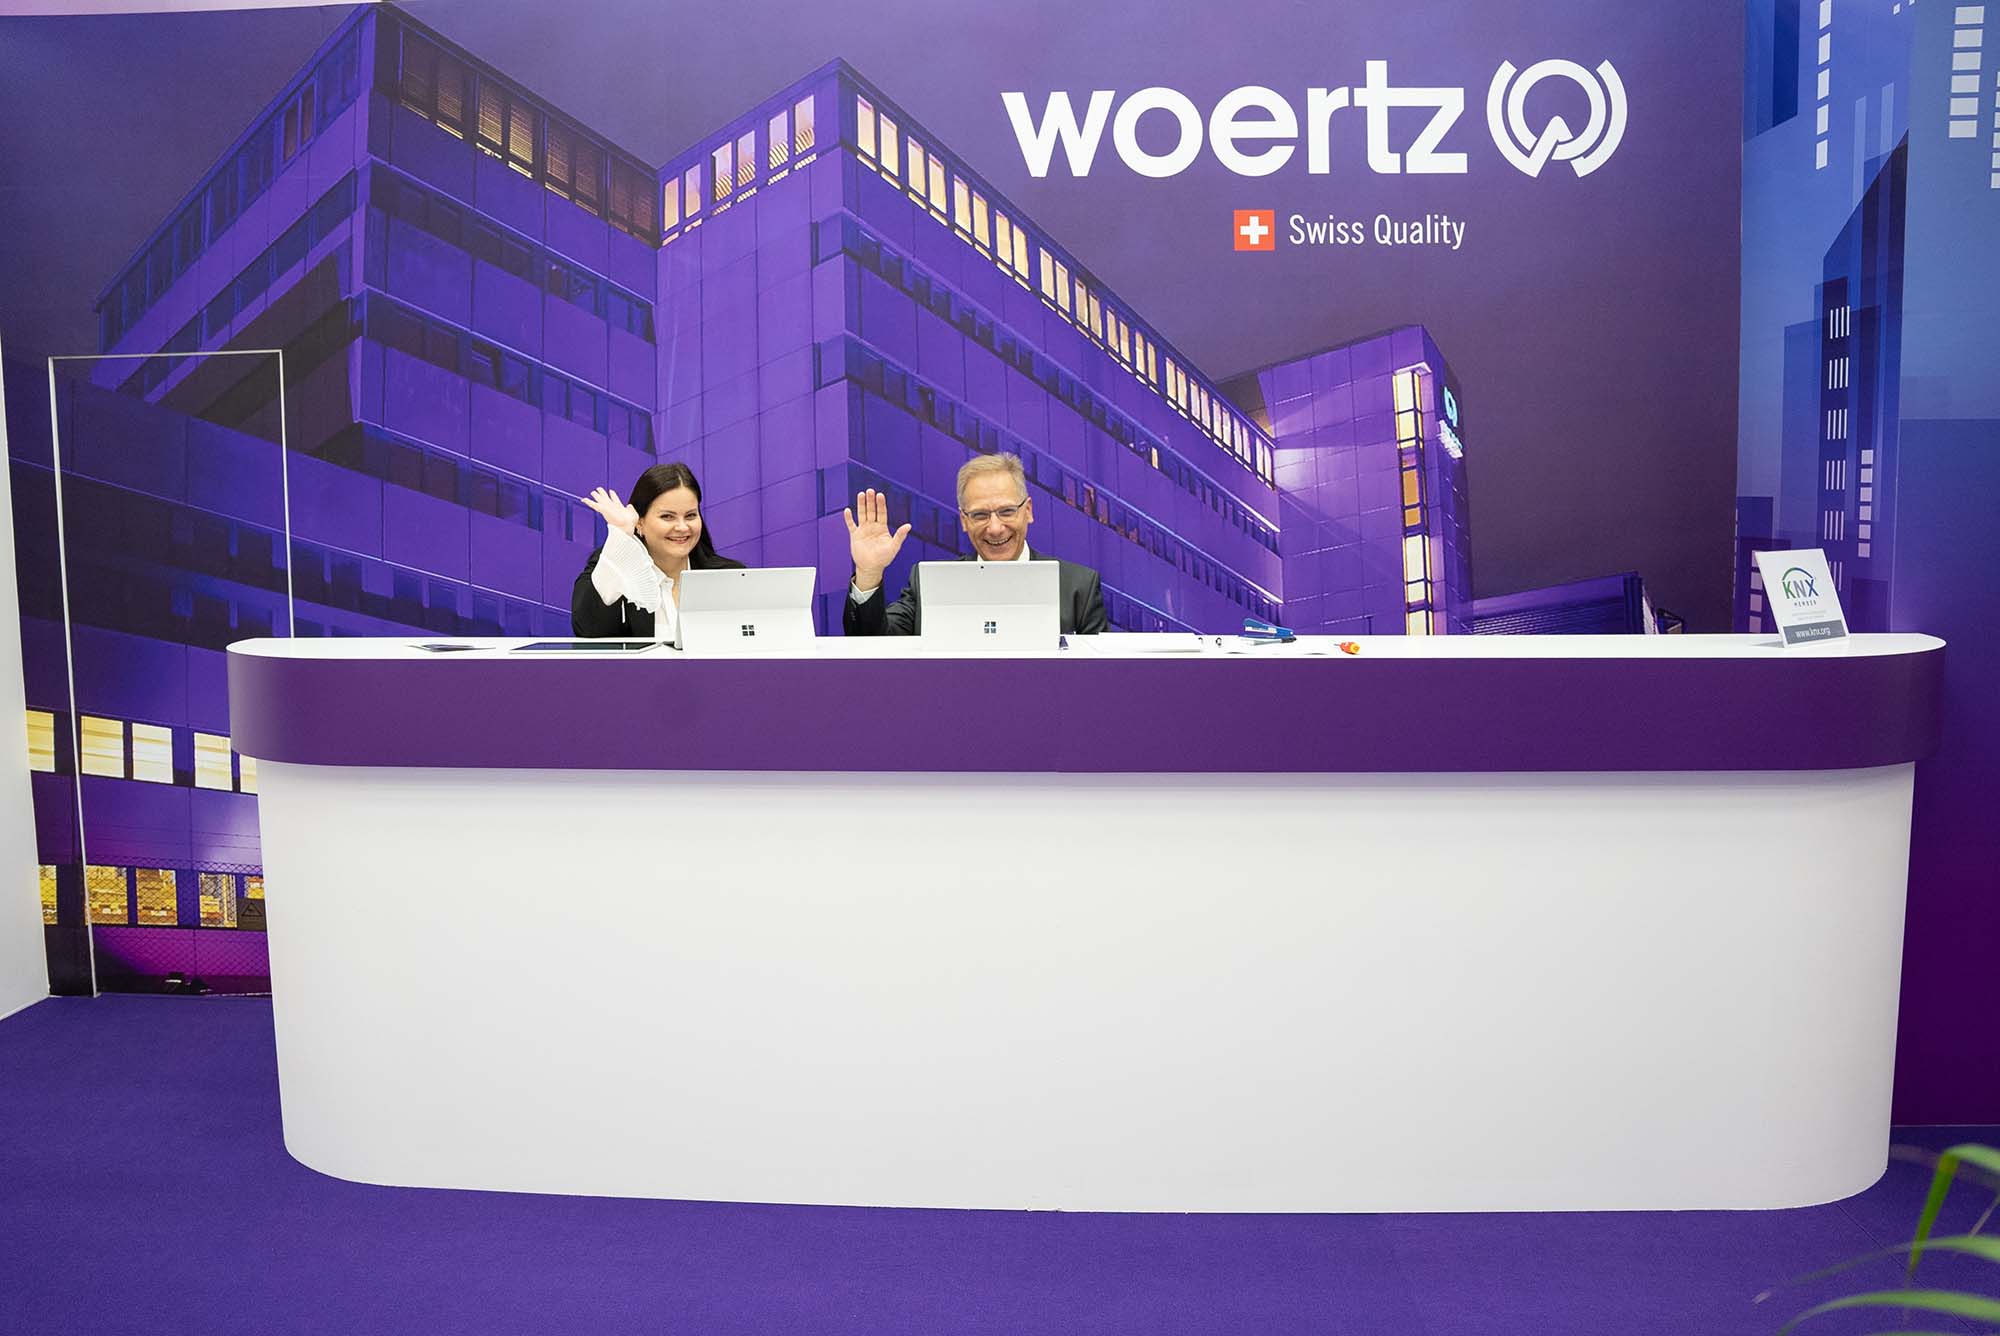 woertz-light-building-2022-2